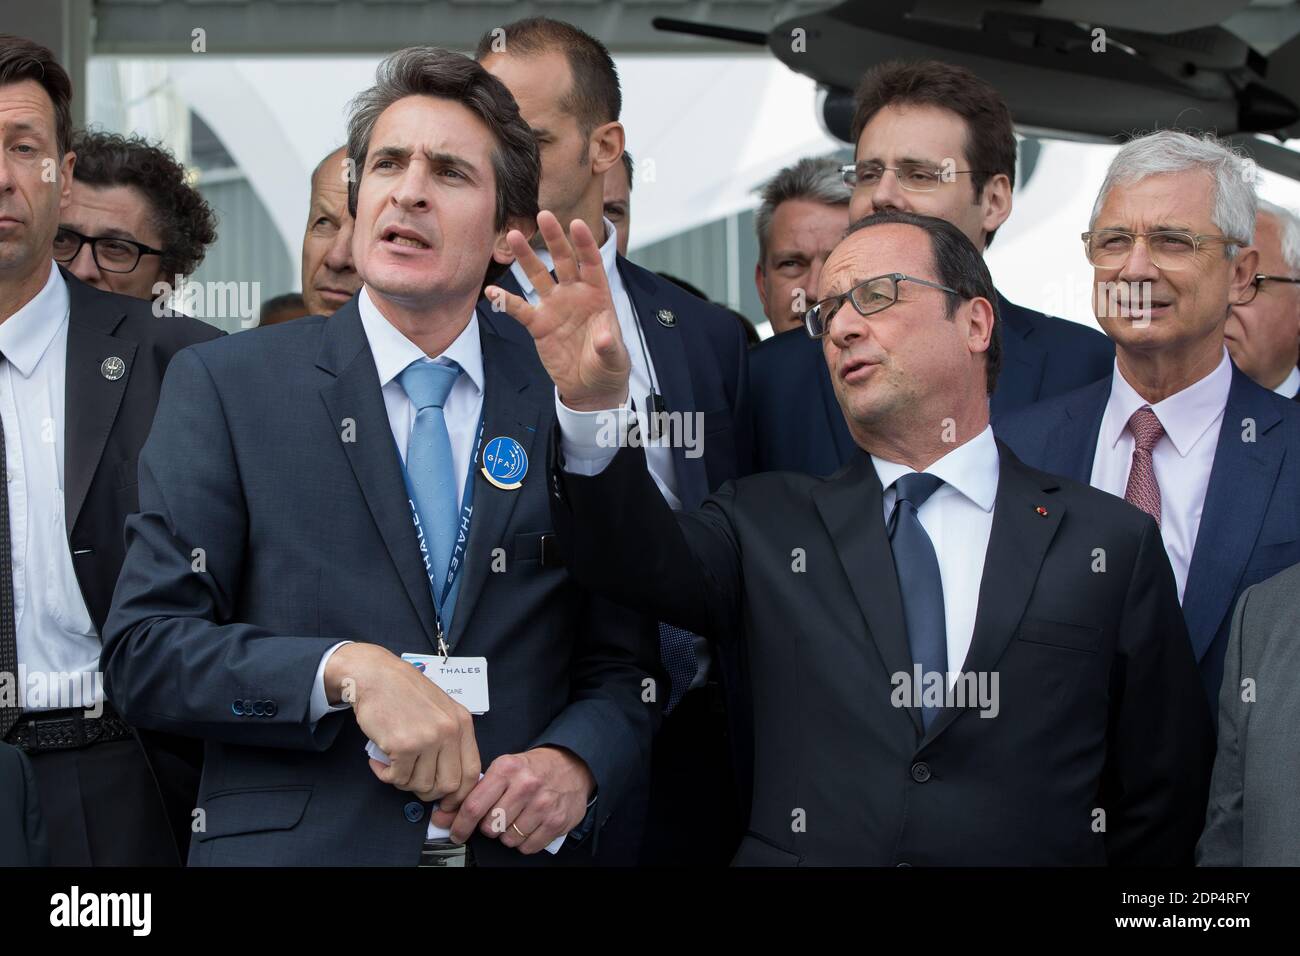 Le président français François Hollande (C) écoute Patrice Caine (L), PDG de Thales, lors de l'ouverture officielle du 51e salon International de l'Air de Paris au Bourget, près de Paris, le 15 juin 2015. Photo de Romuald Meigneux/Pool/ABACAPRESS.COM Banque D'Images